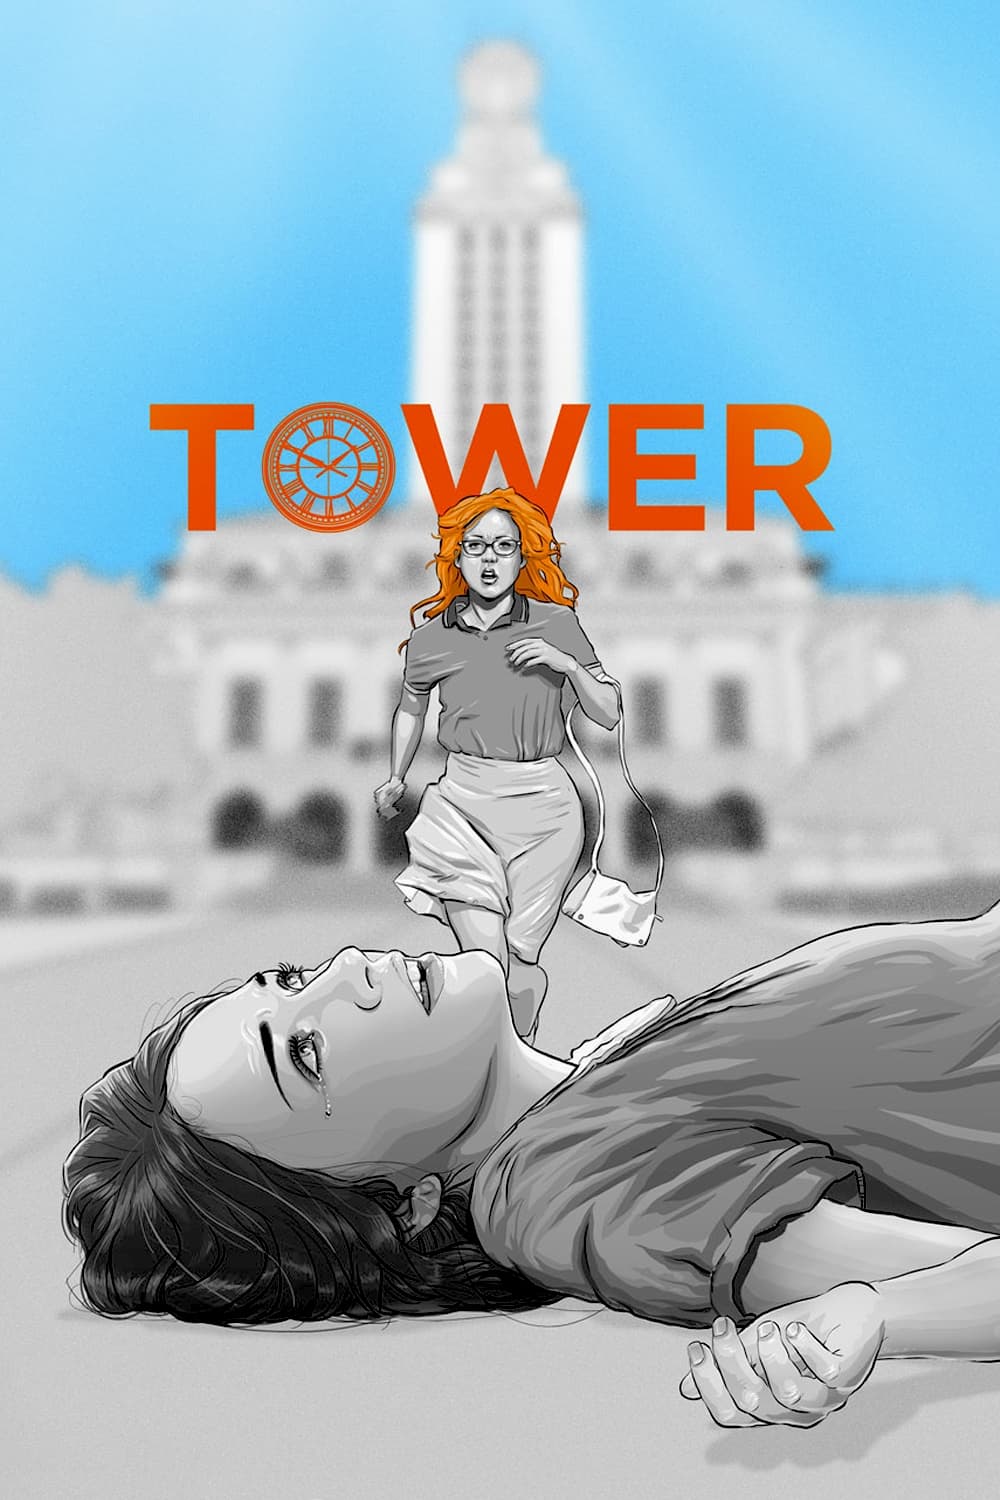 برج (Tower)